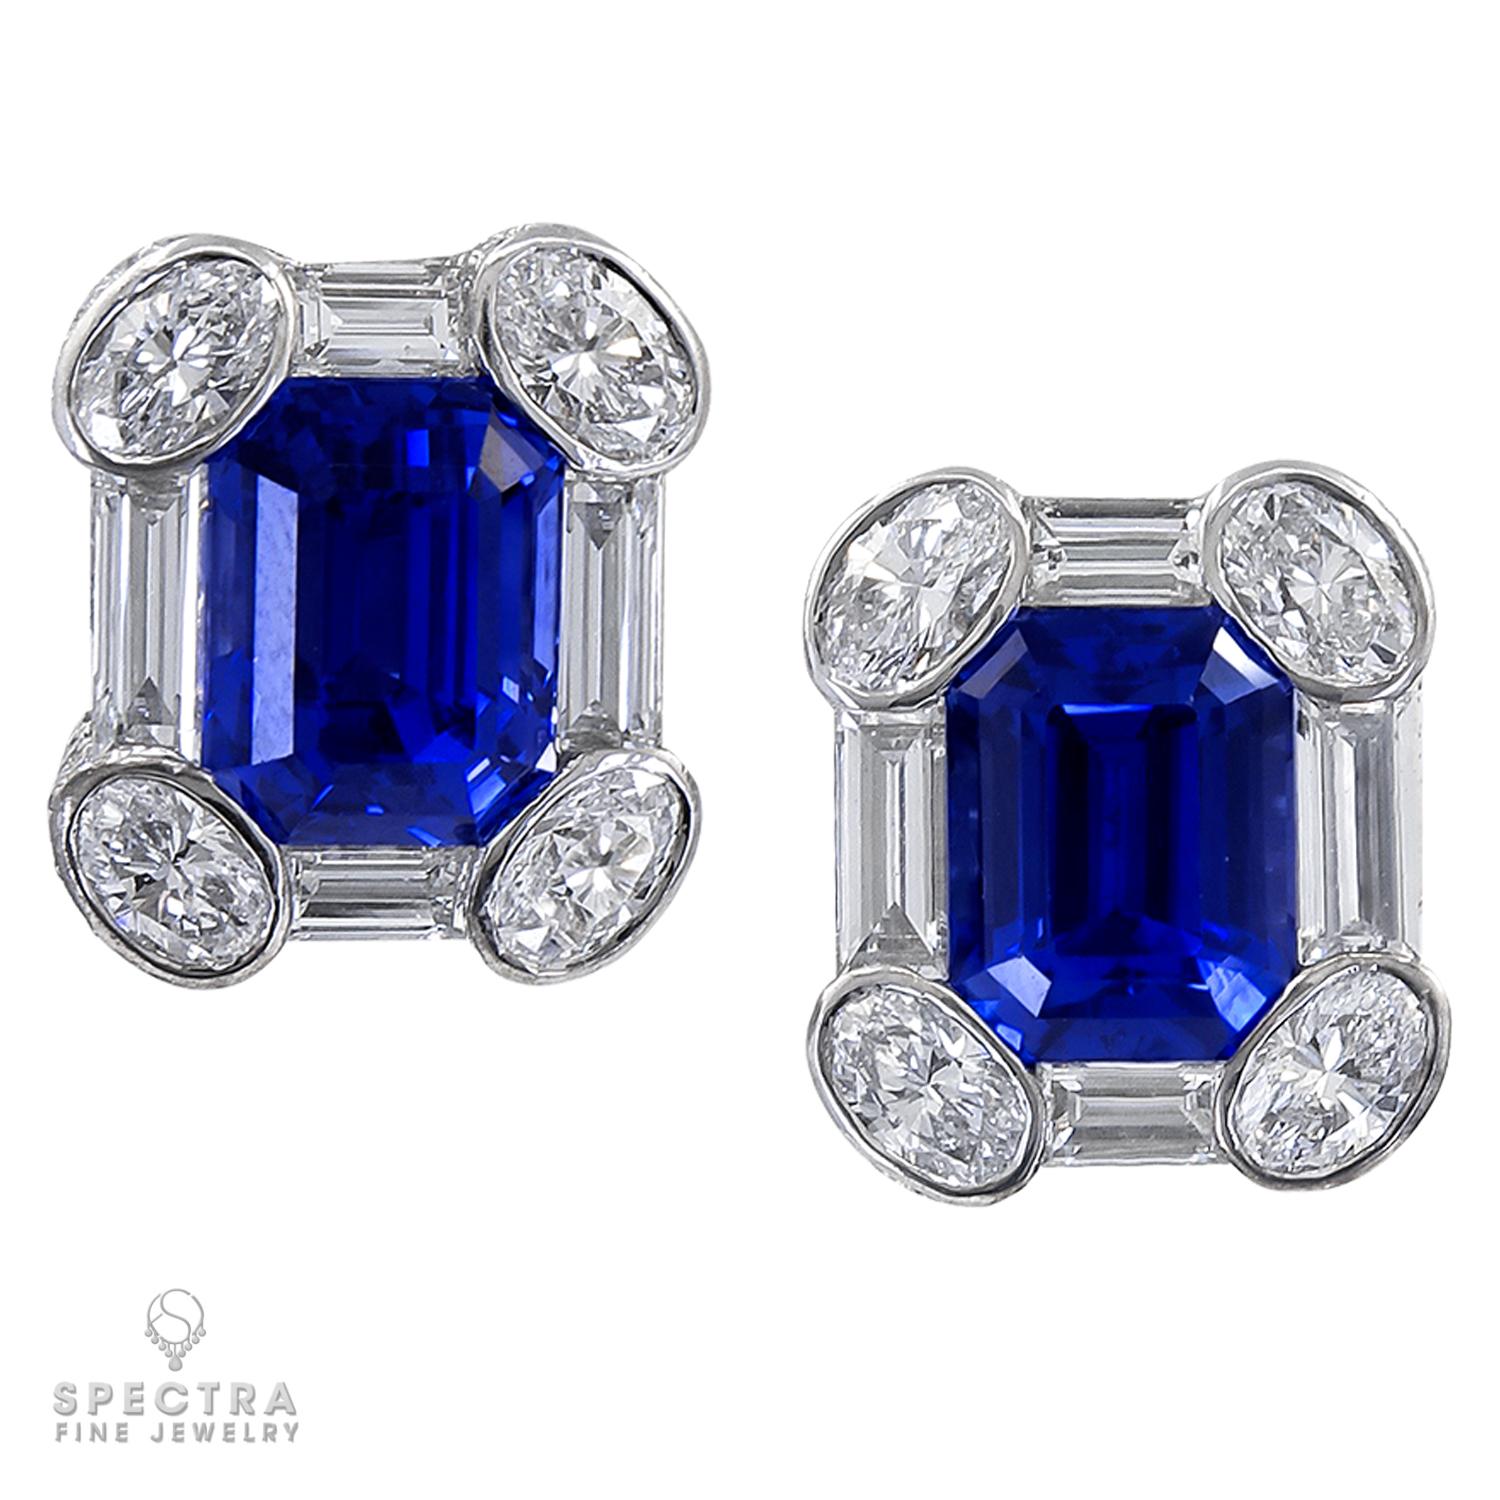 Women's Spectra Fine Jewelry AGL Certified Sapphire Diamond Platinum Earrings For Sale